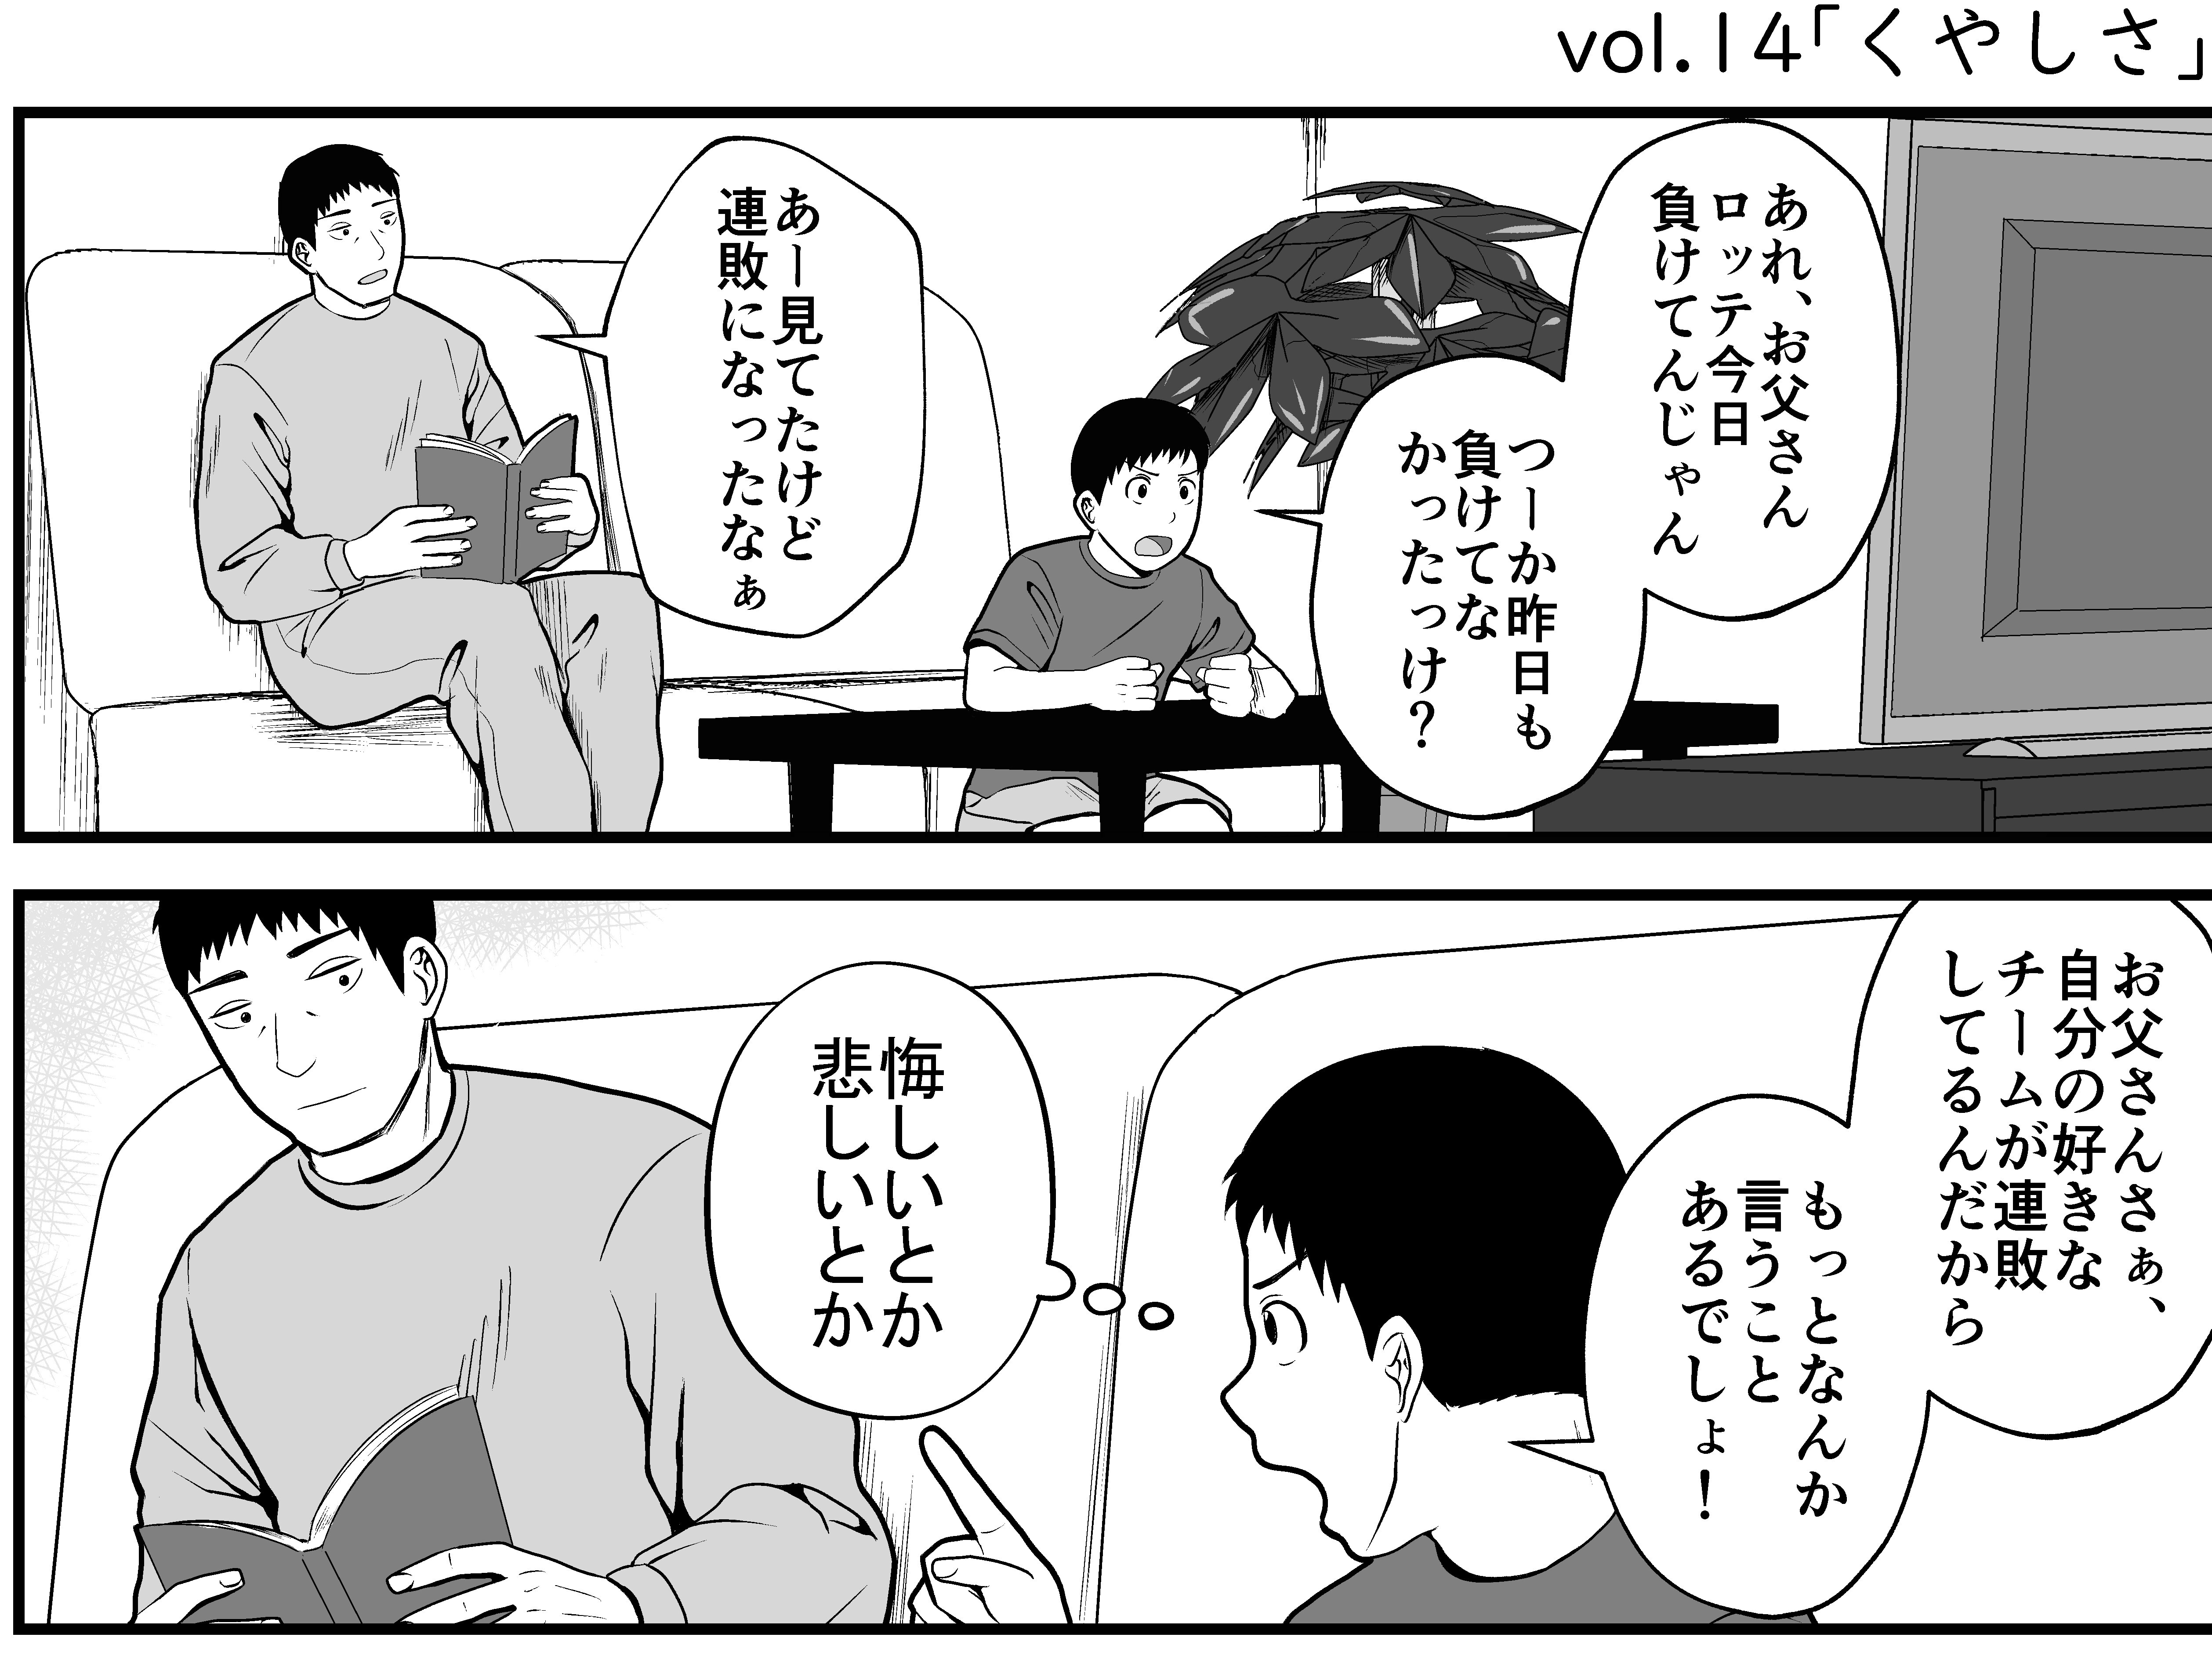 【プロ野球ファンの漫画】 第14回